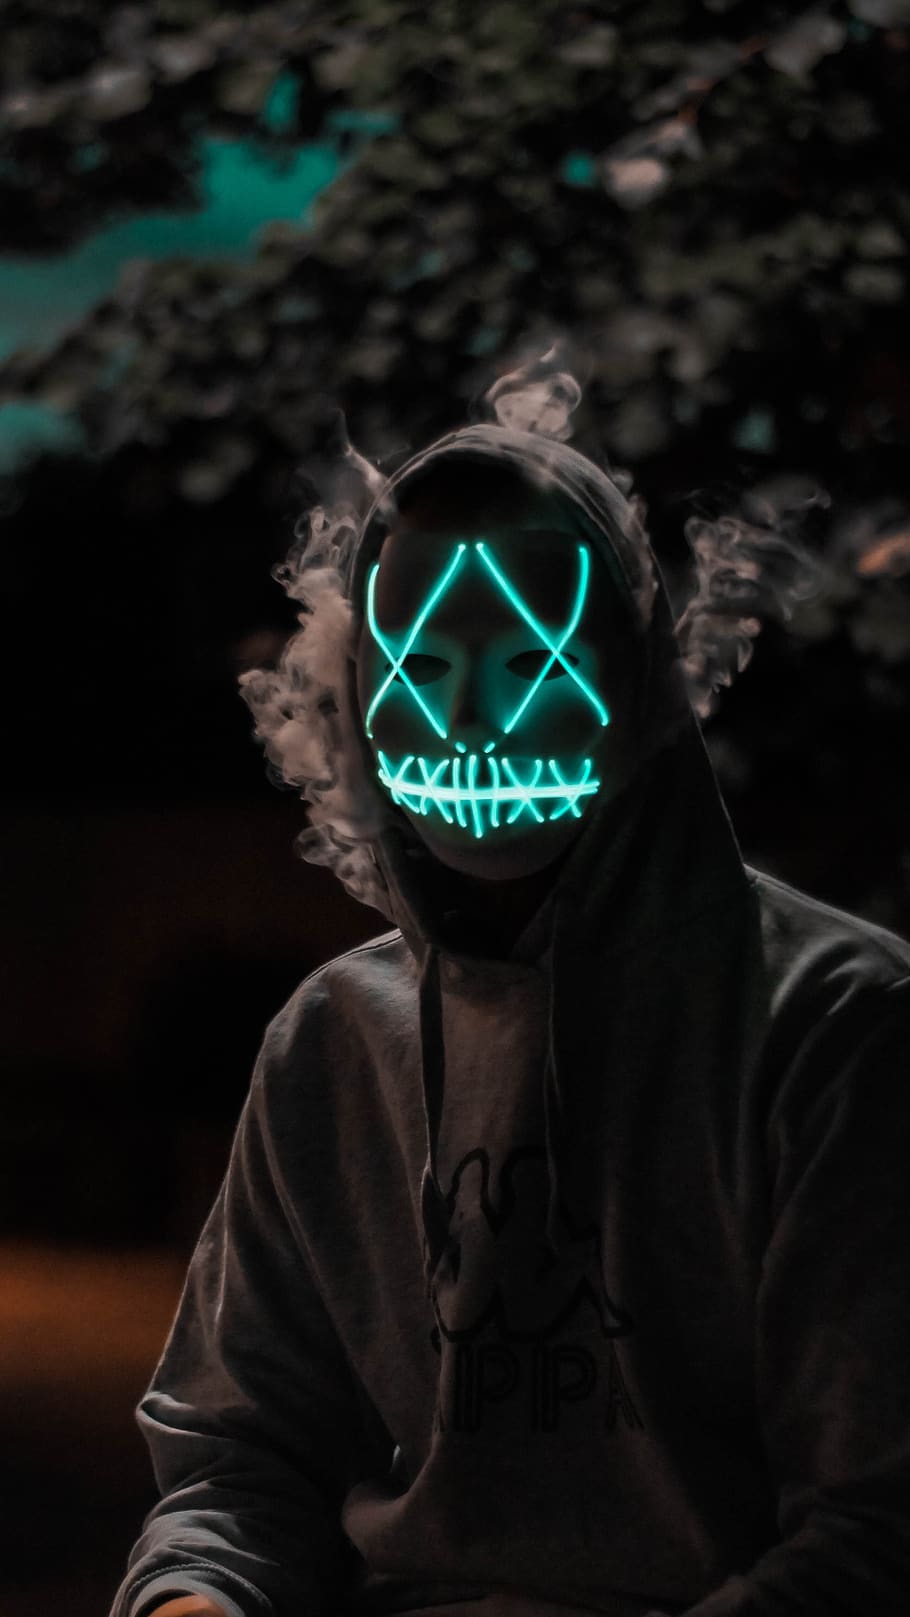 HD wallpaper: purge, light, mask, halloween, dark, head, face